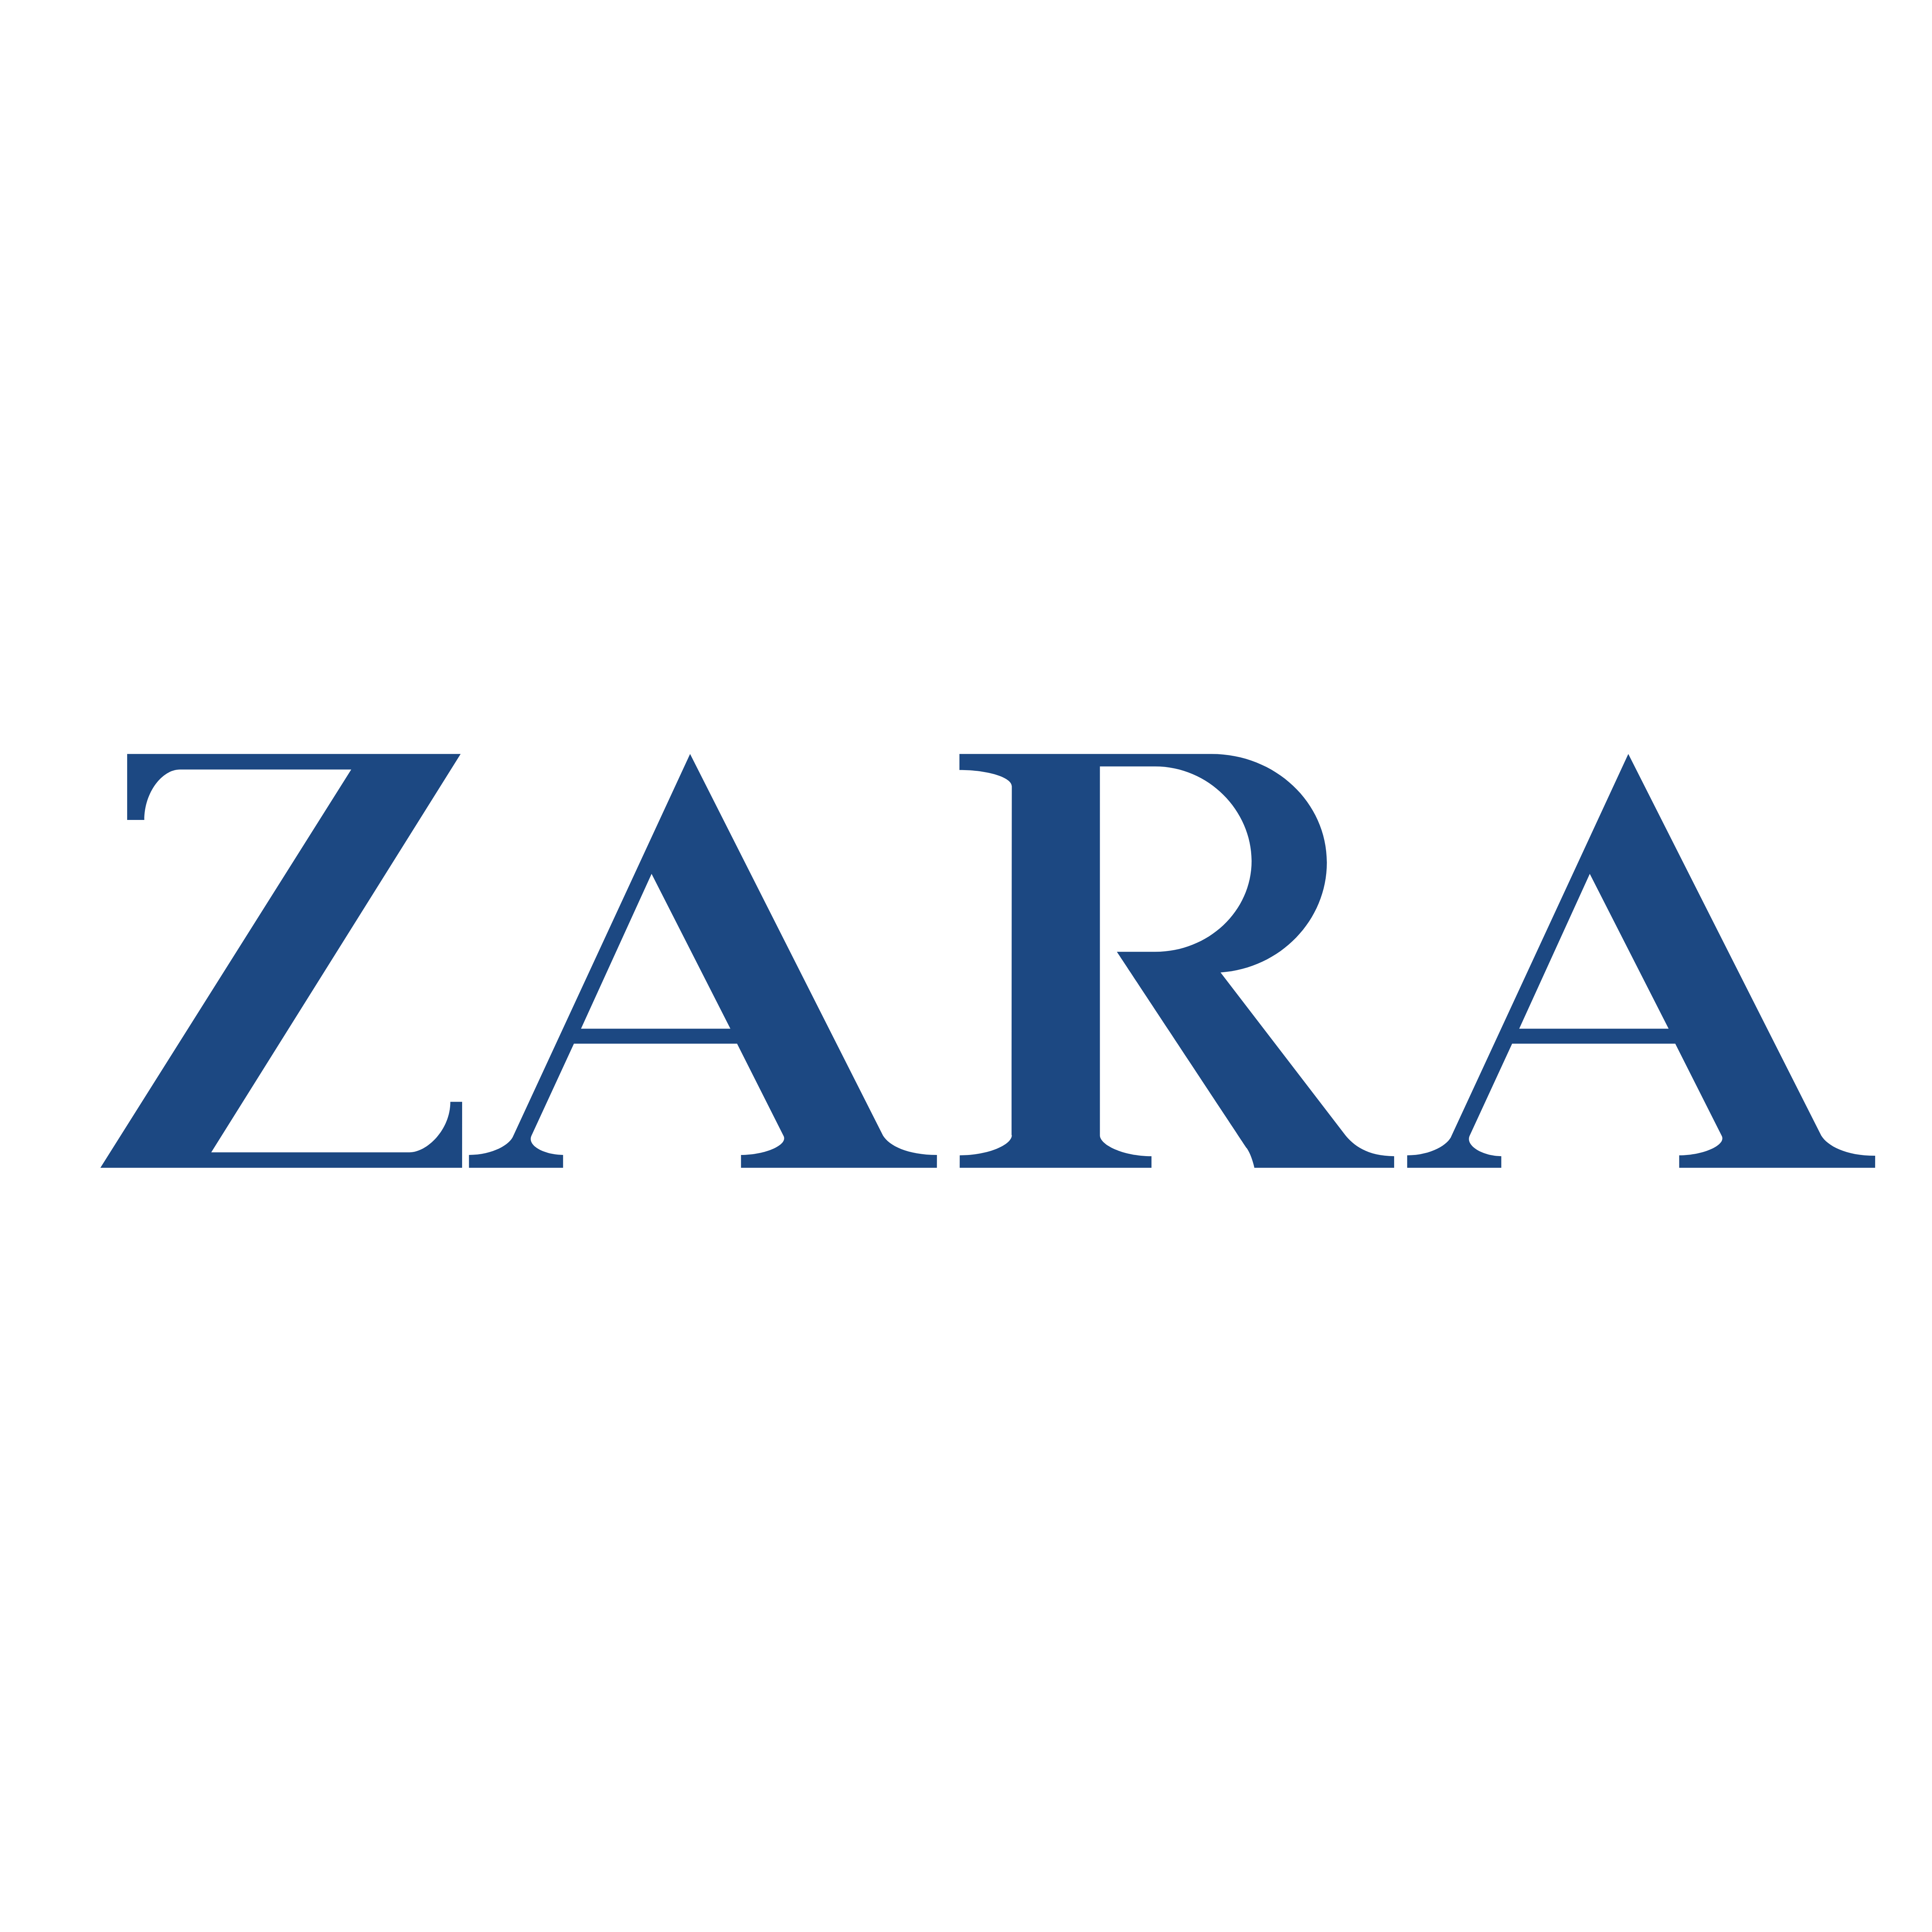 Search: Zara Man Logo Vectors